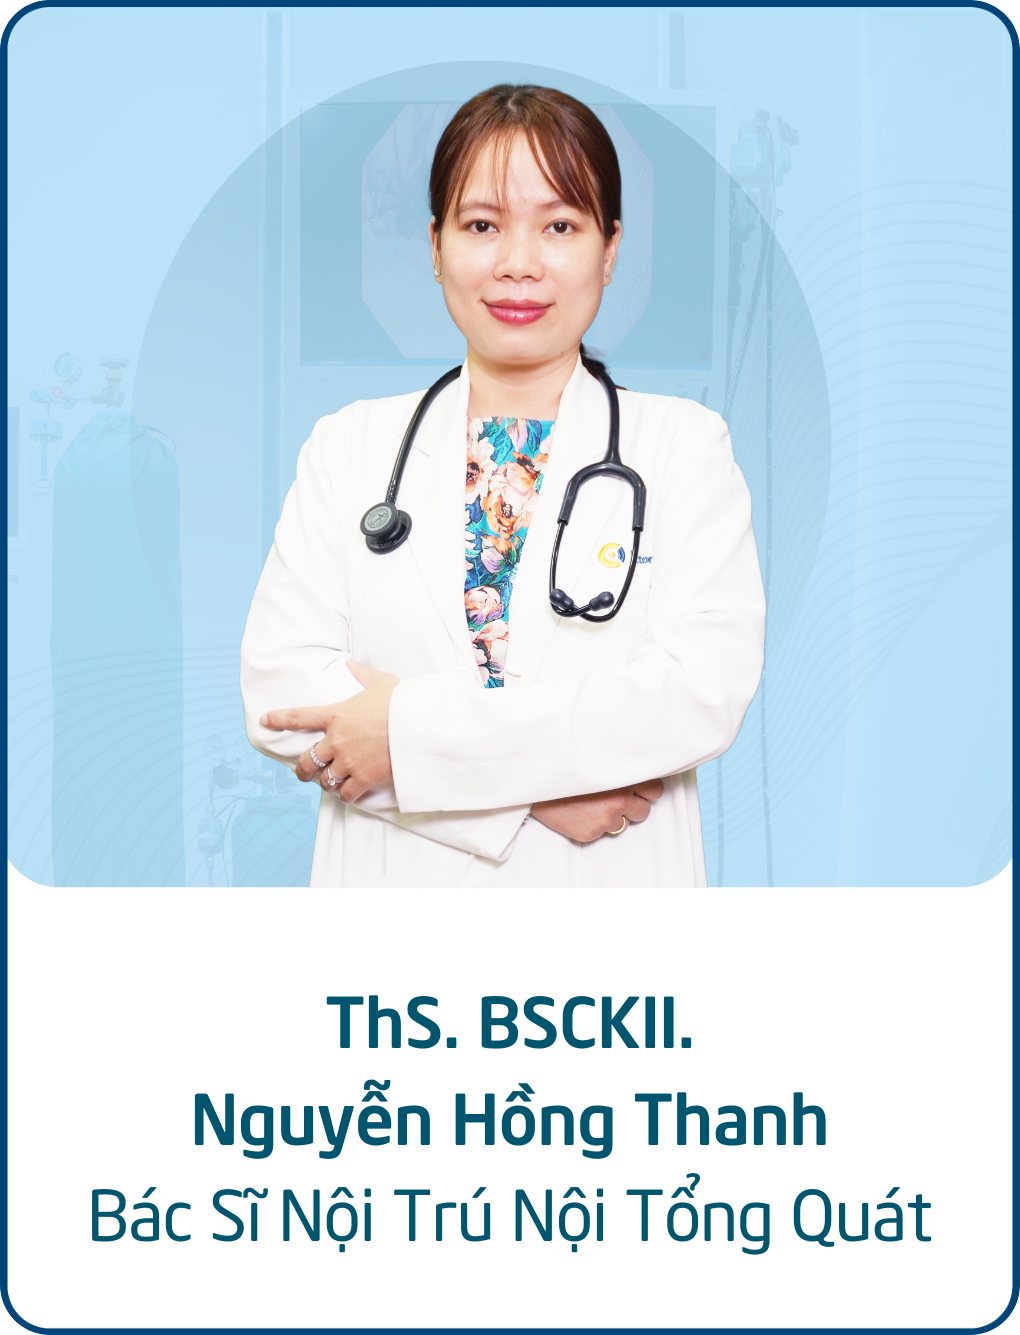 ThS. BSCKII. Nguyễn Hồng Thanh